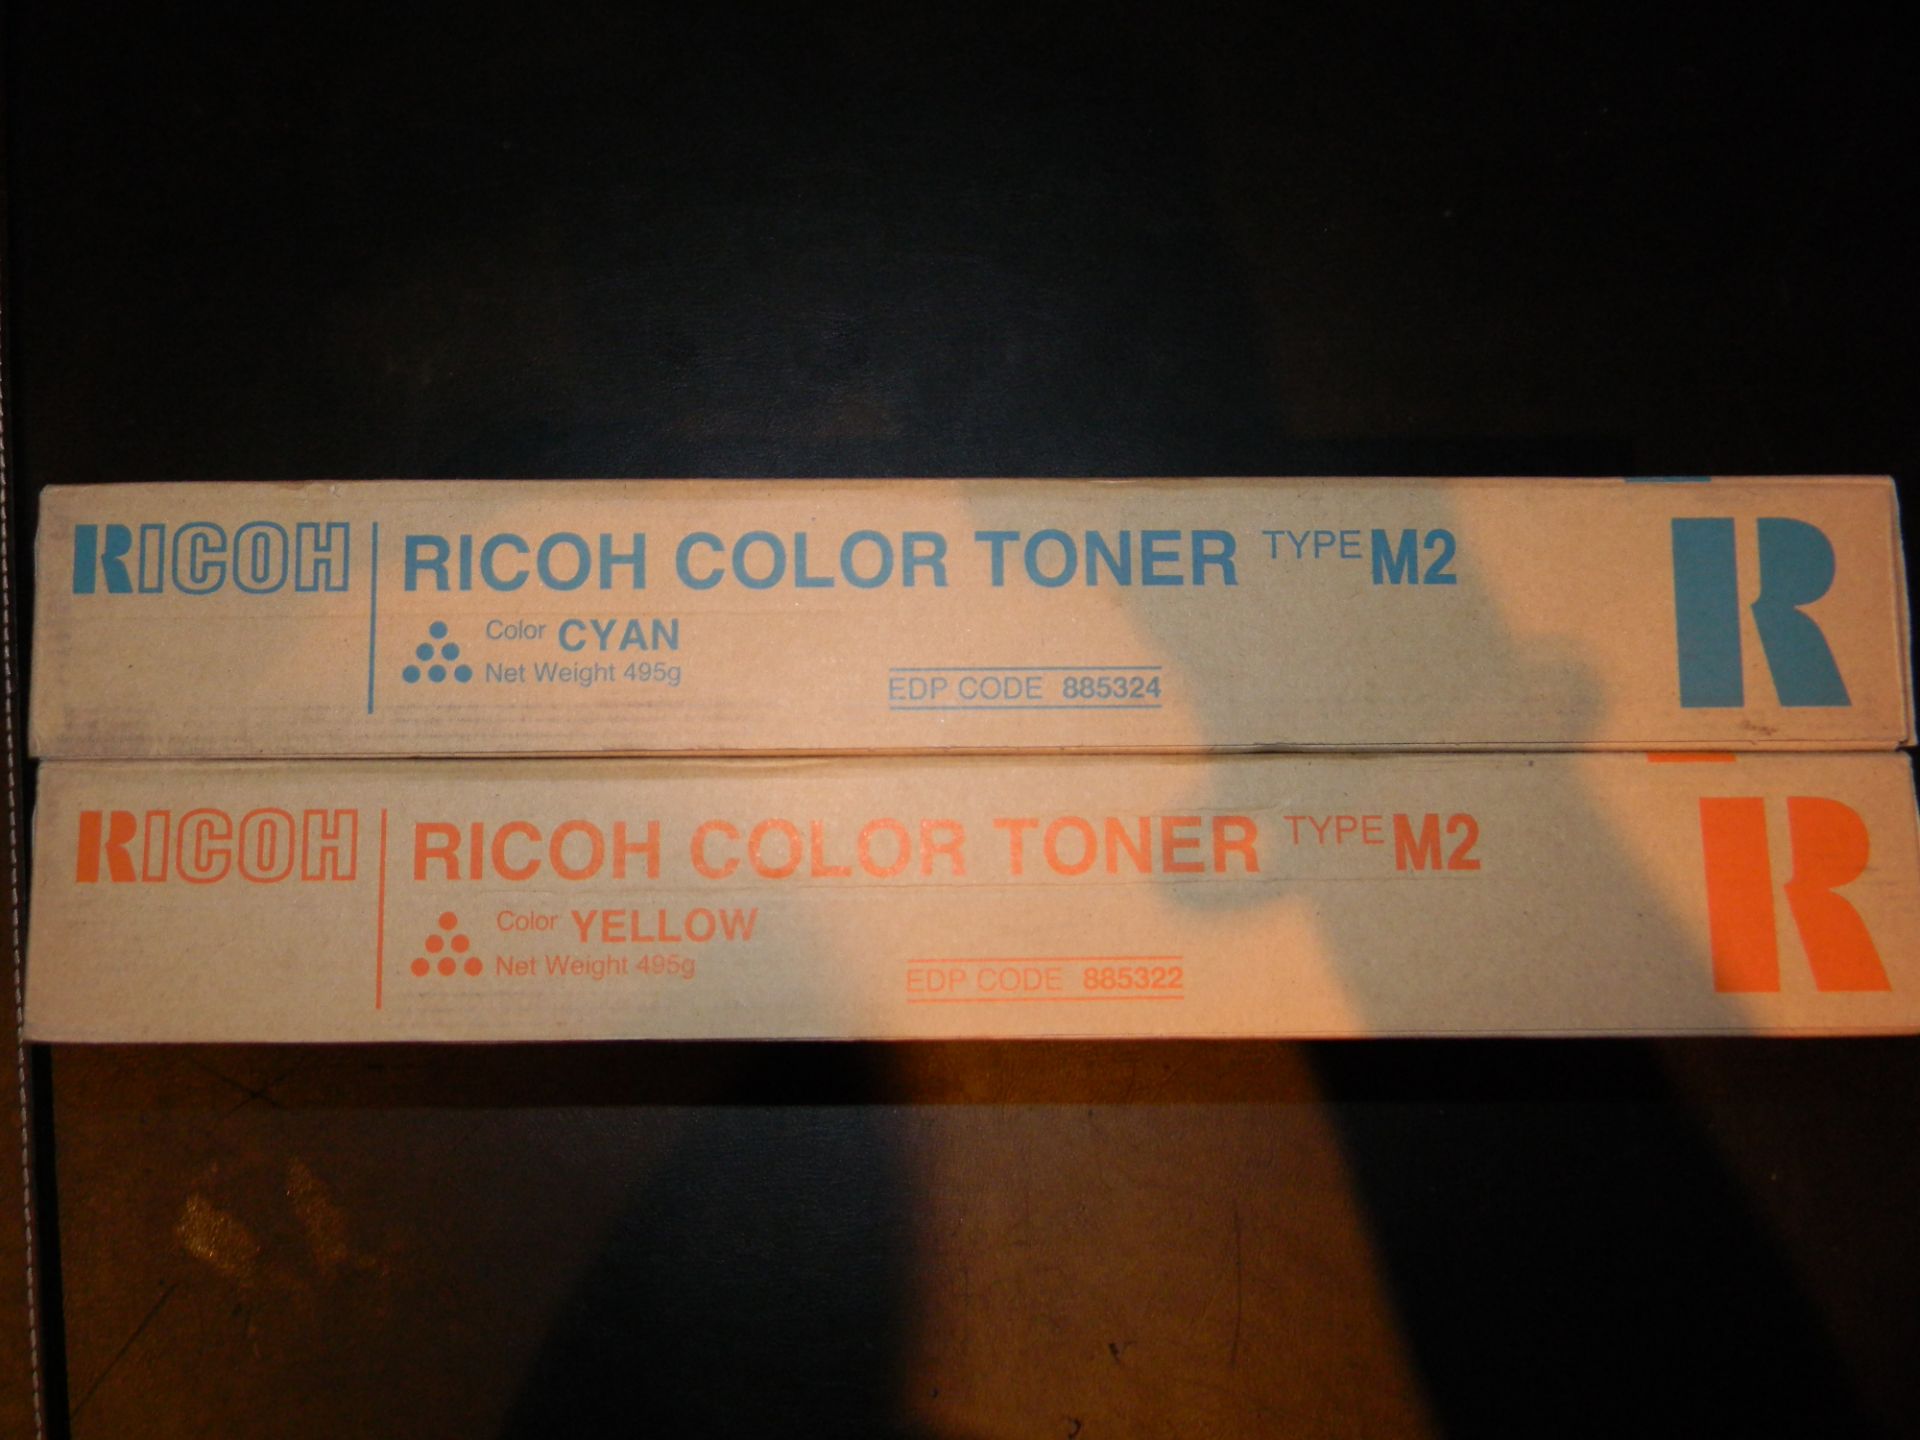 Ricoh Color Toner Type M2 x 2